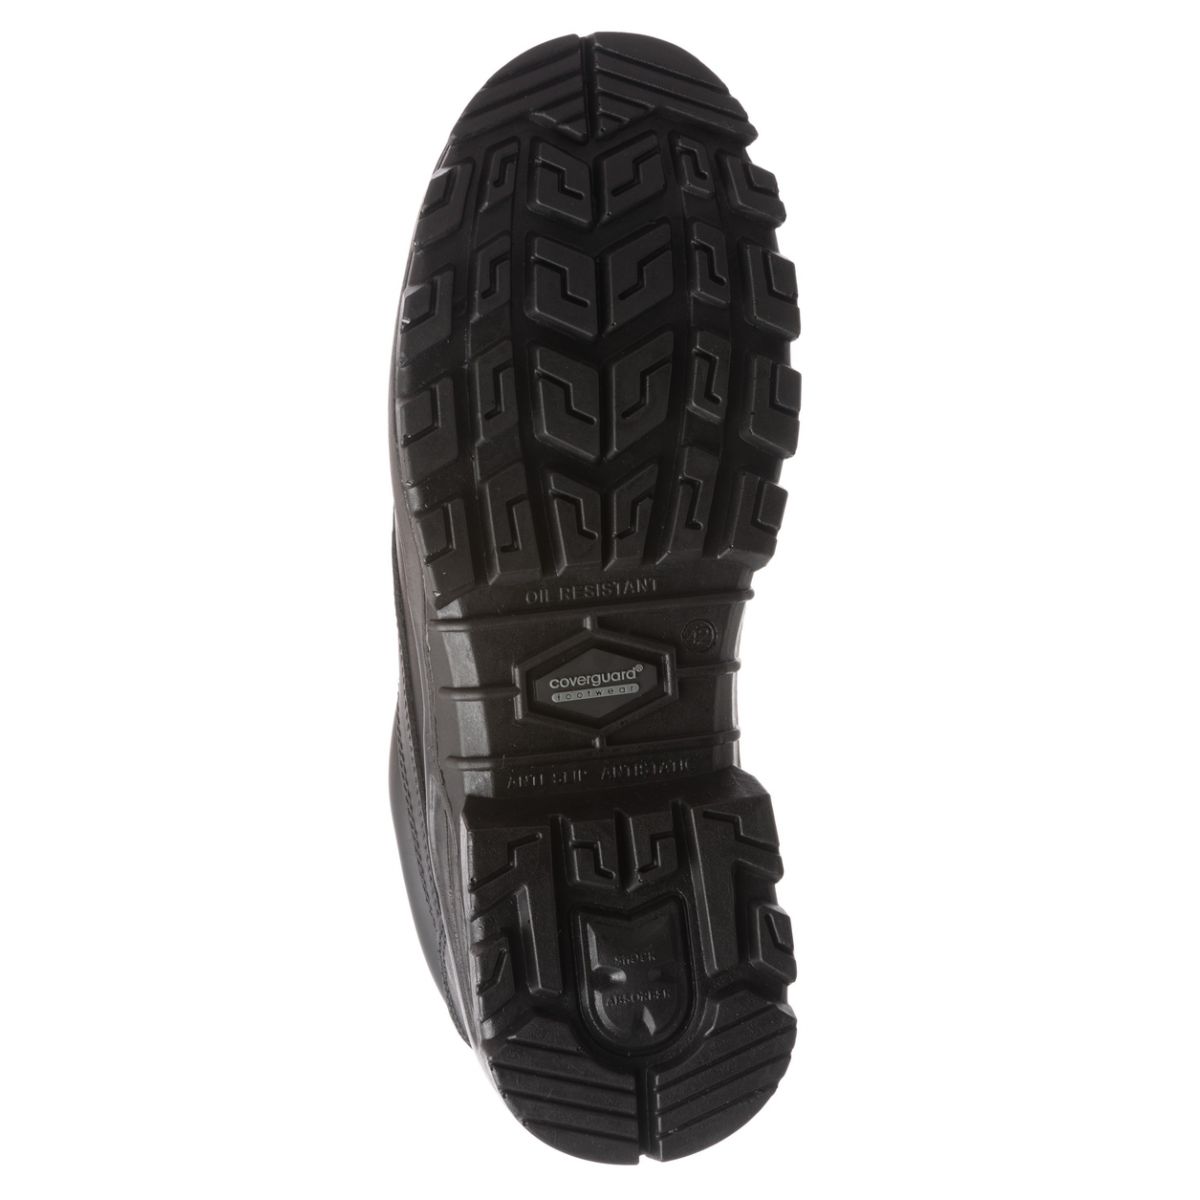 Chaussure de sécurité AVENTURINE S3 basse noir composite - COVERGUARD - Taille 42 1